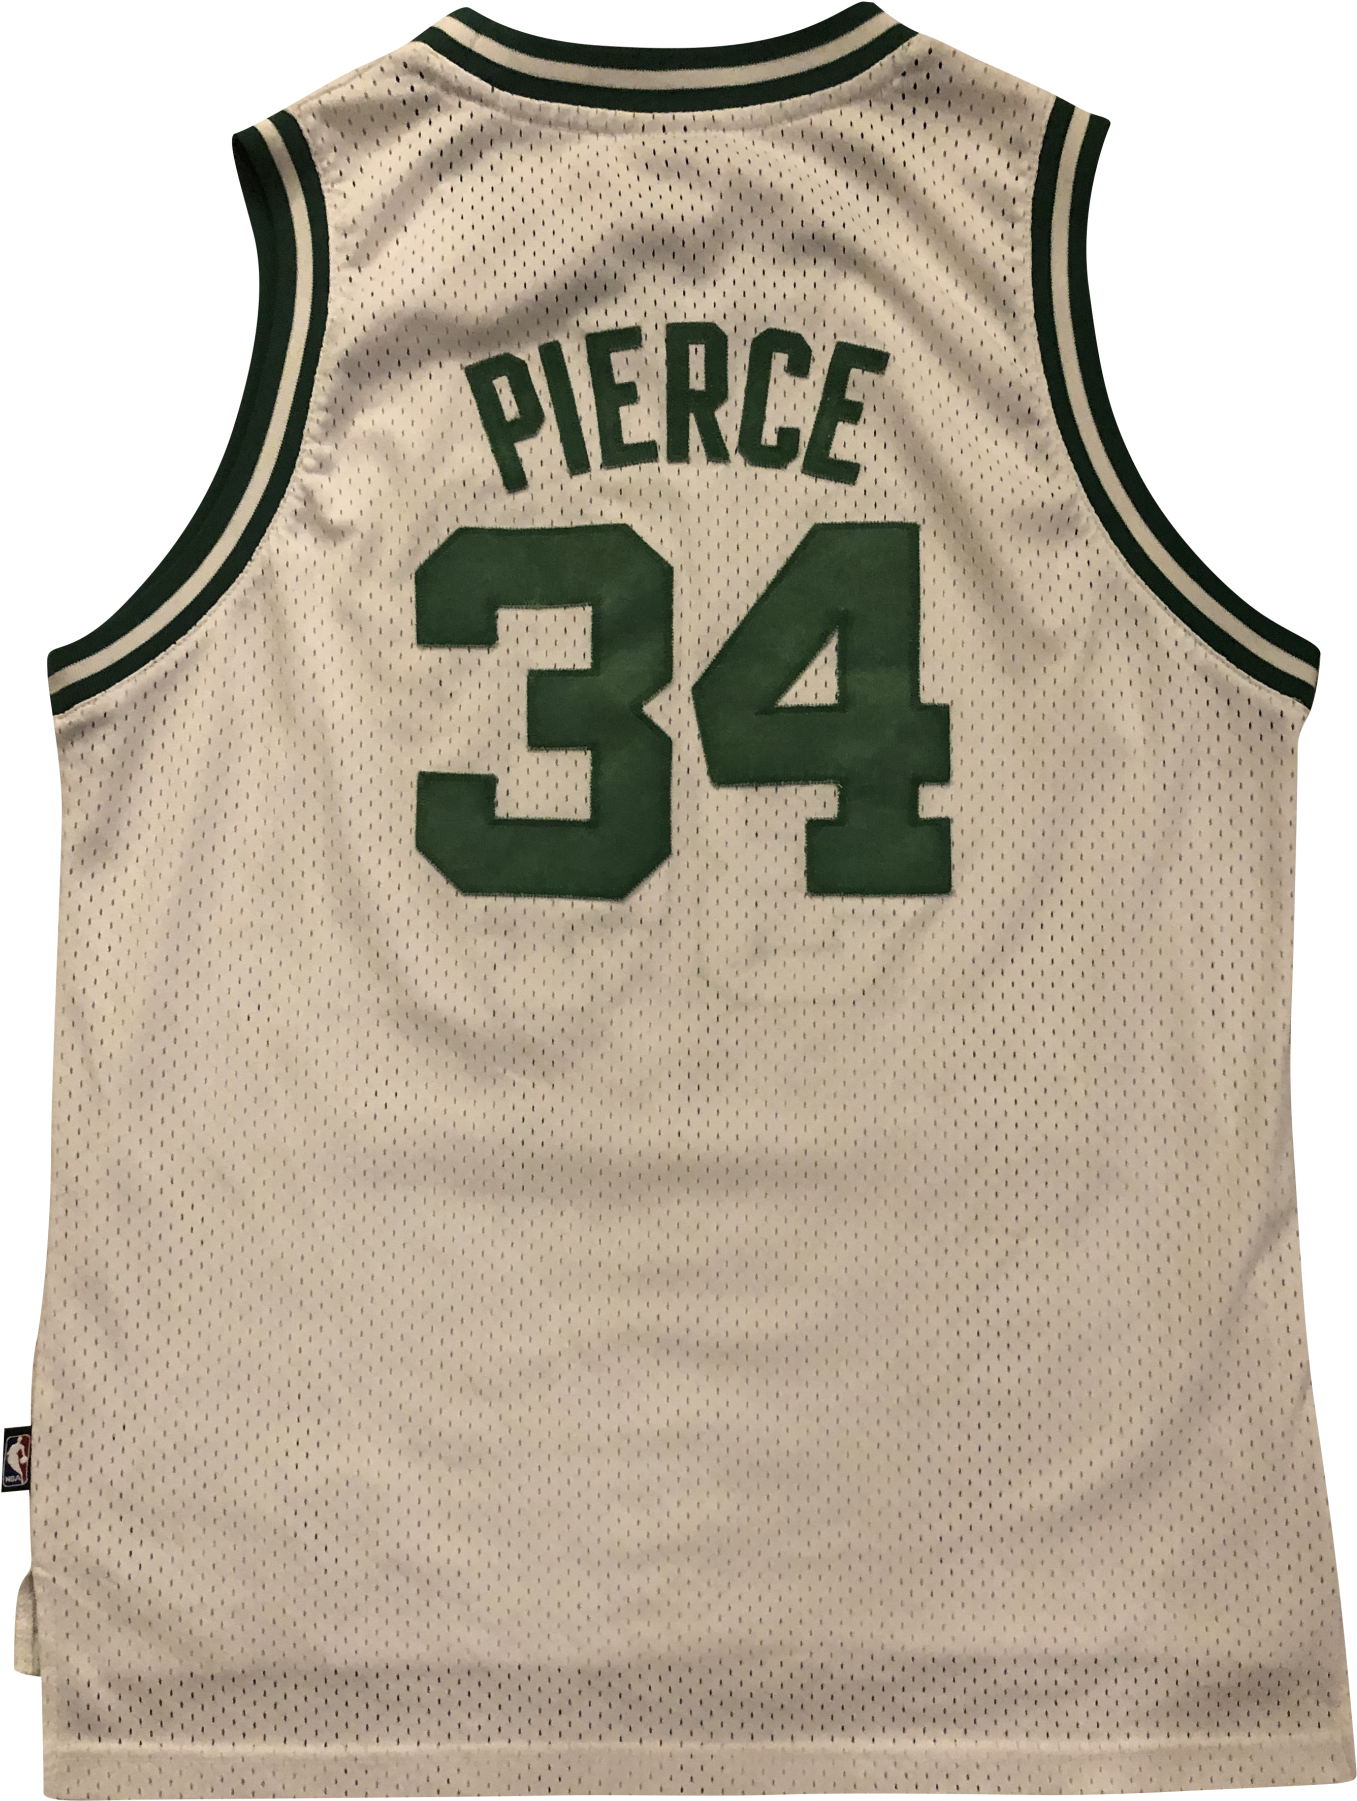 Pierce34 Basketball Jersey